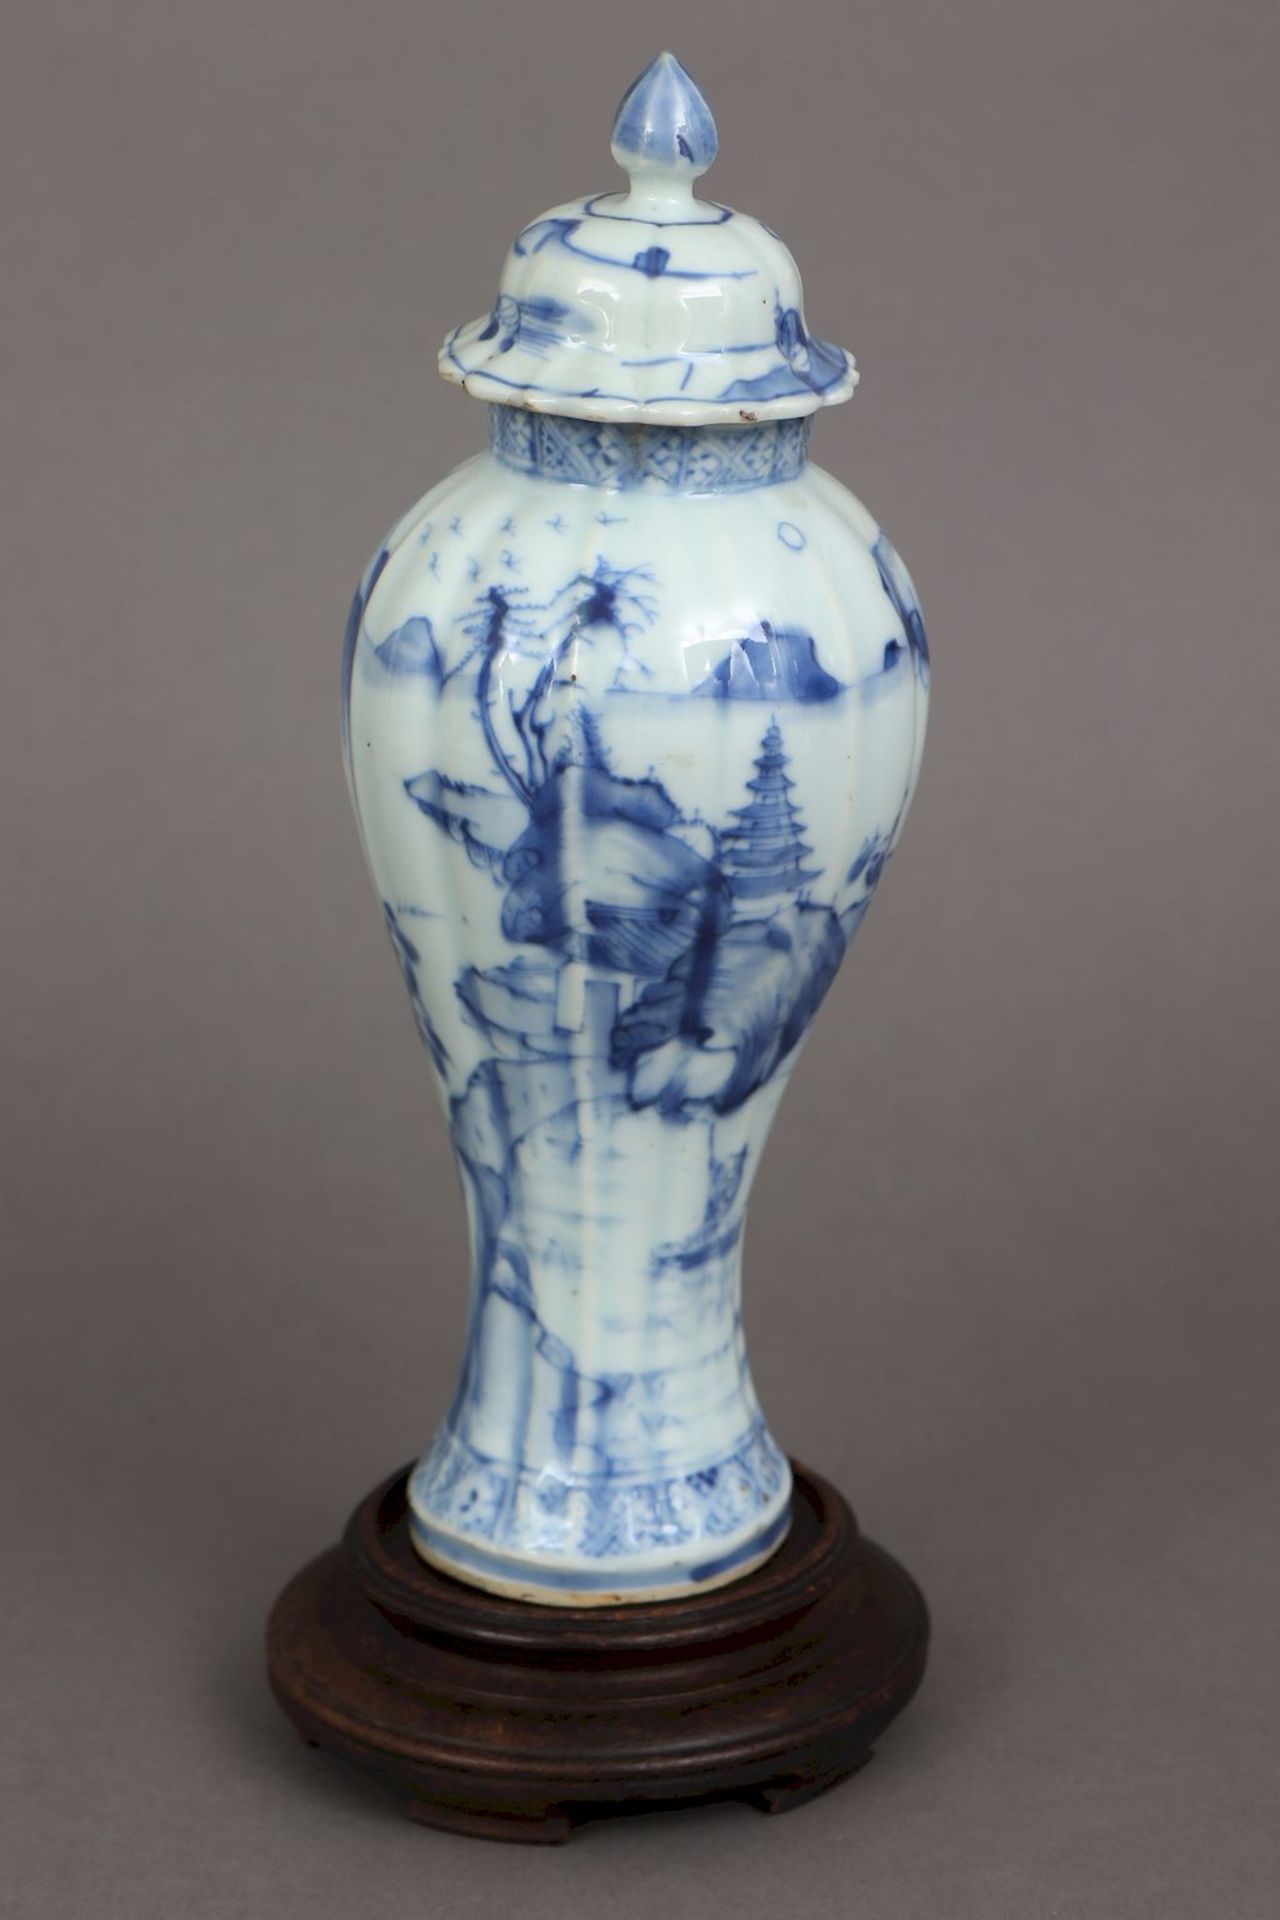 Chinesisches Vasengefäß mit Blaumalerei - Bild 2 aus 5